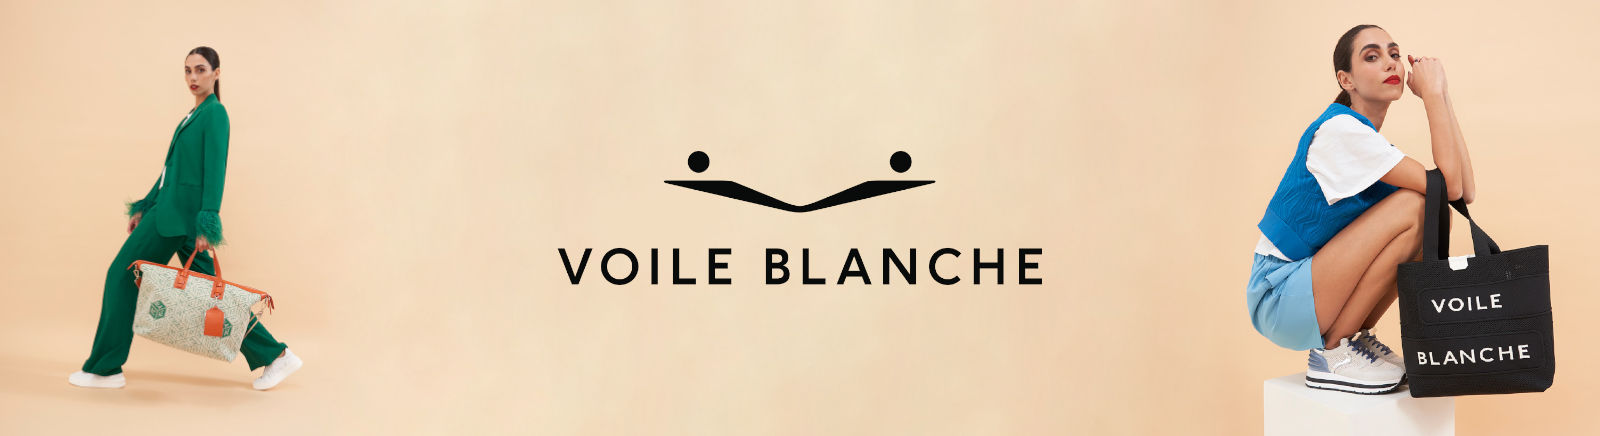 Prange: Voile Blanche Winter Boots für Damen online shoppen